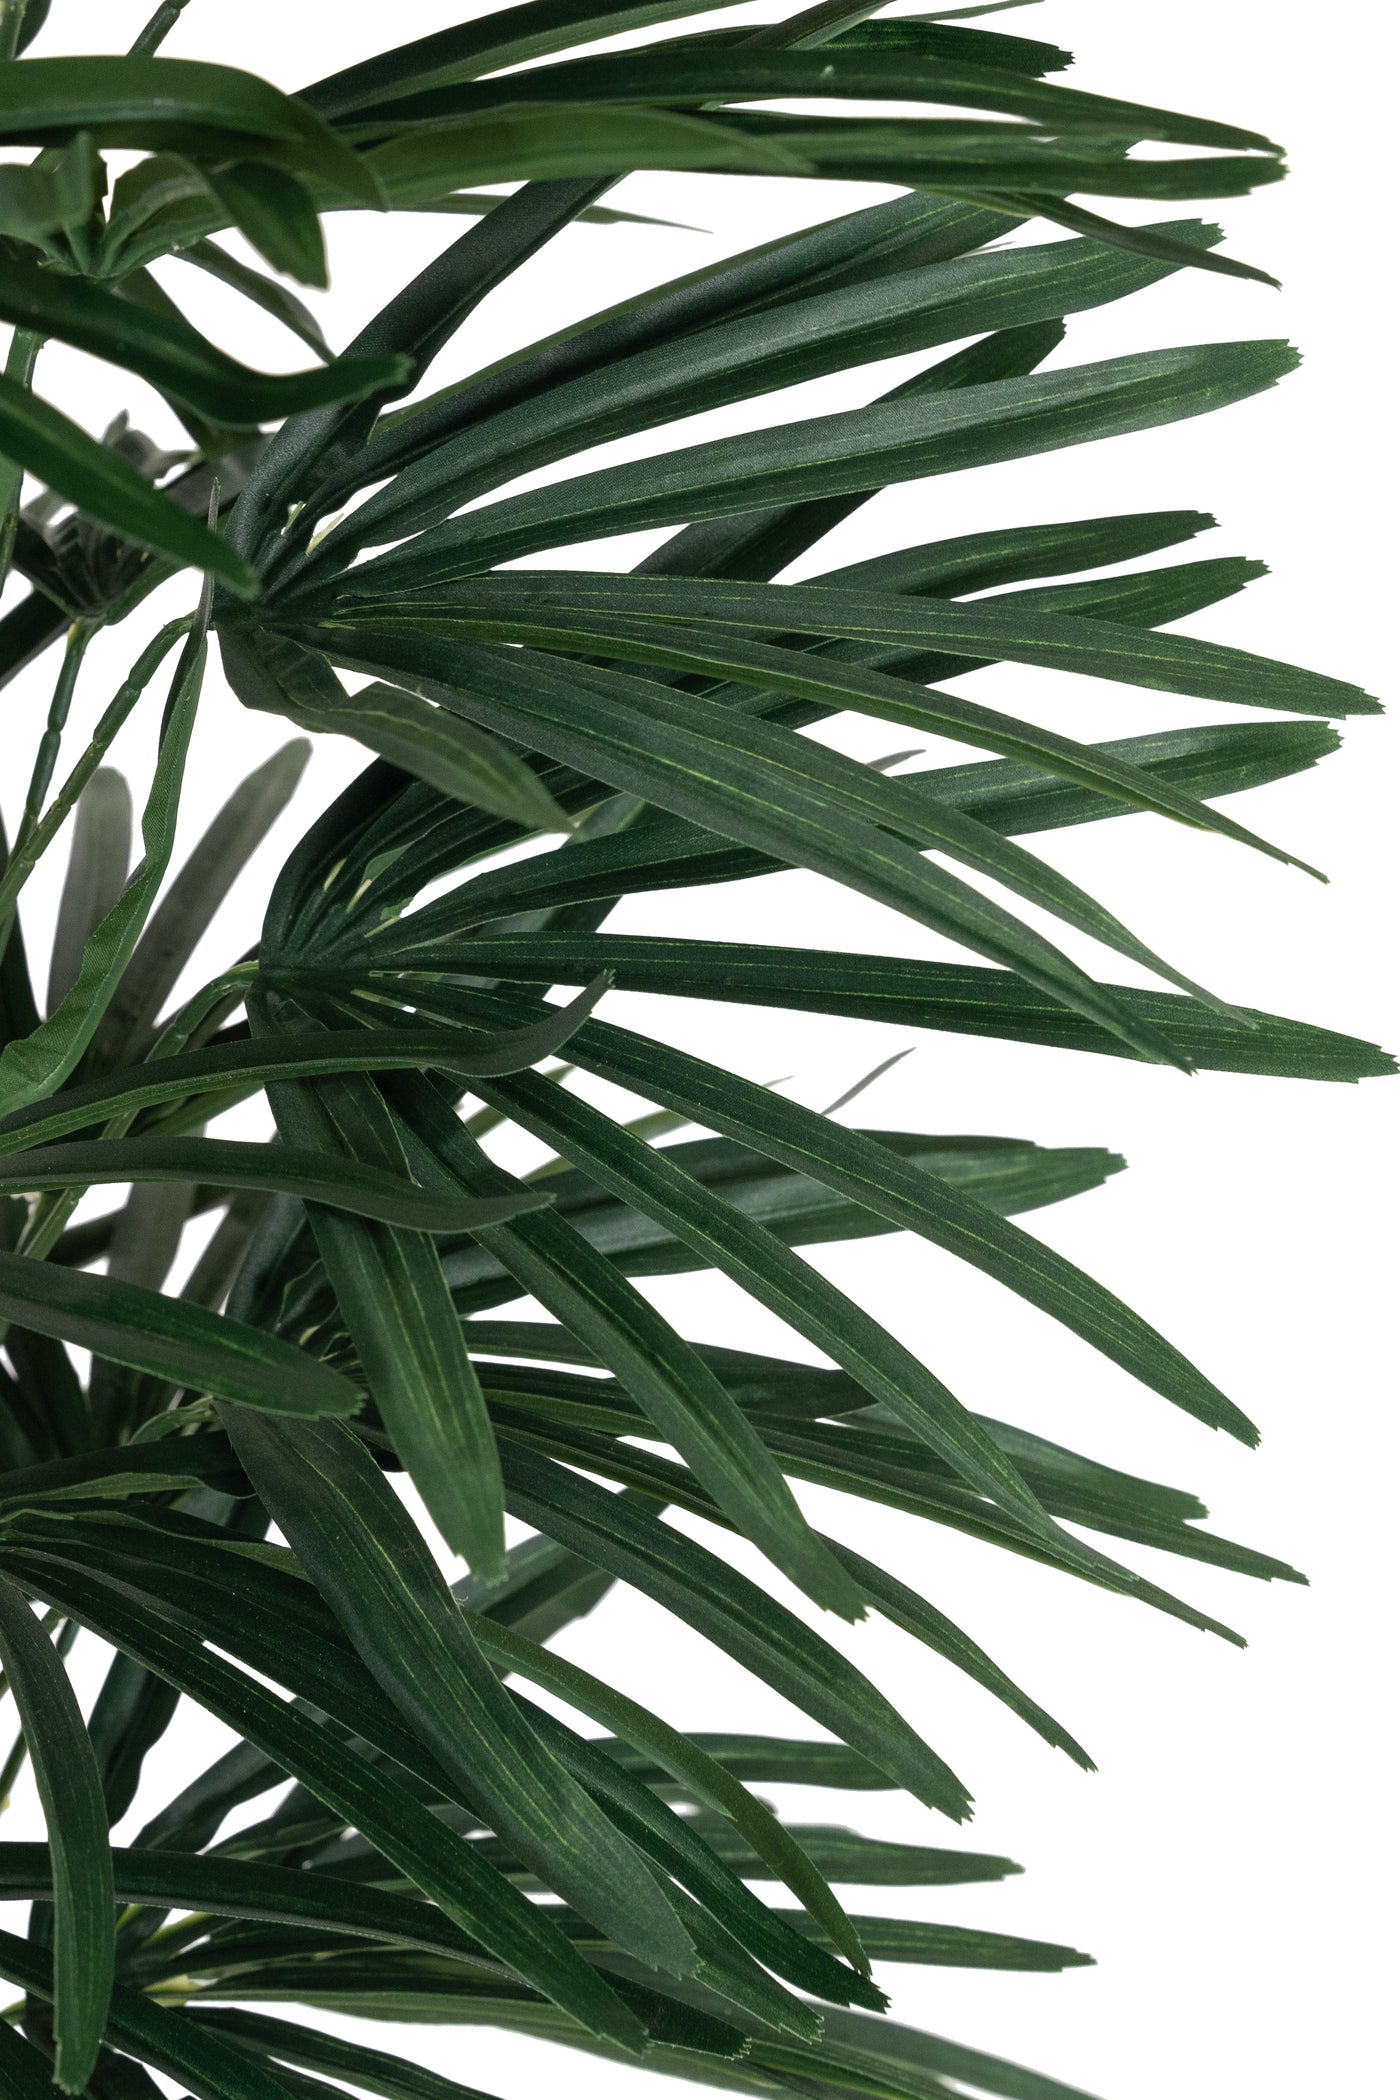 Palm artificial H110cm Rhapis excelsa cu 30 frunze cu protectie UV